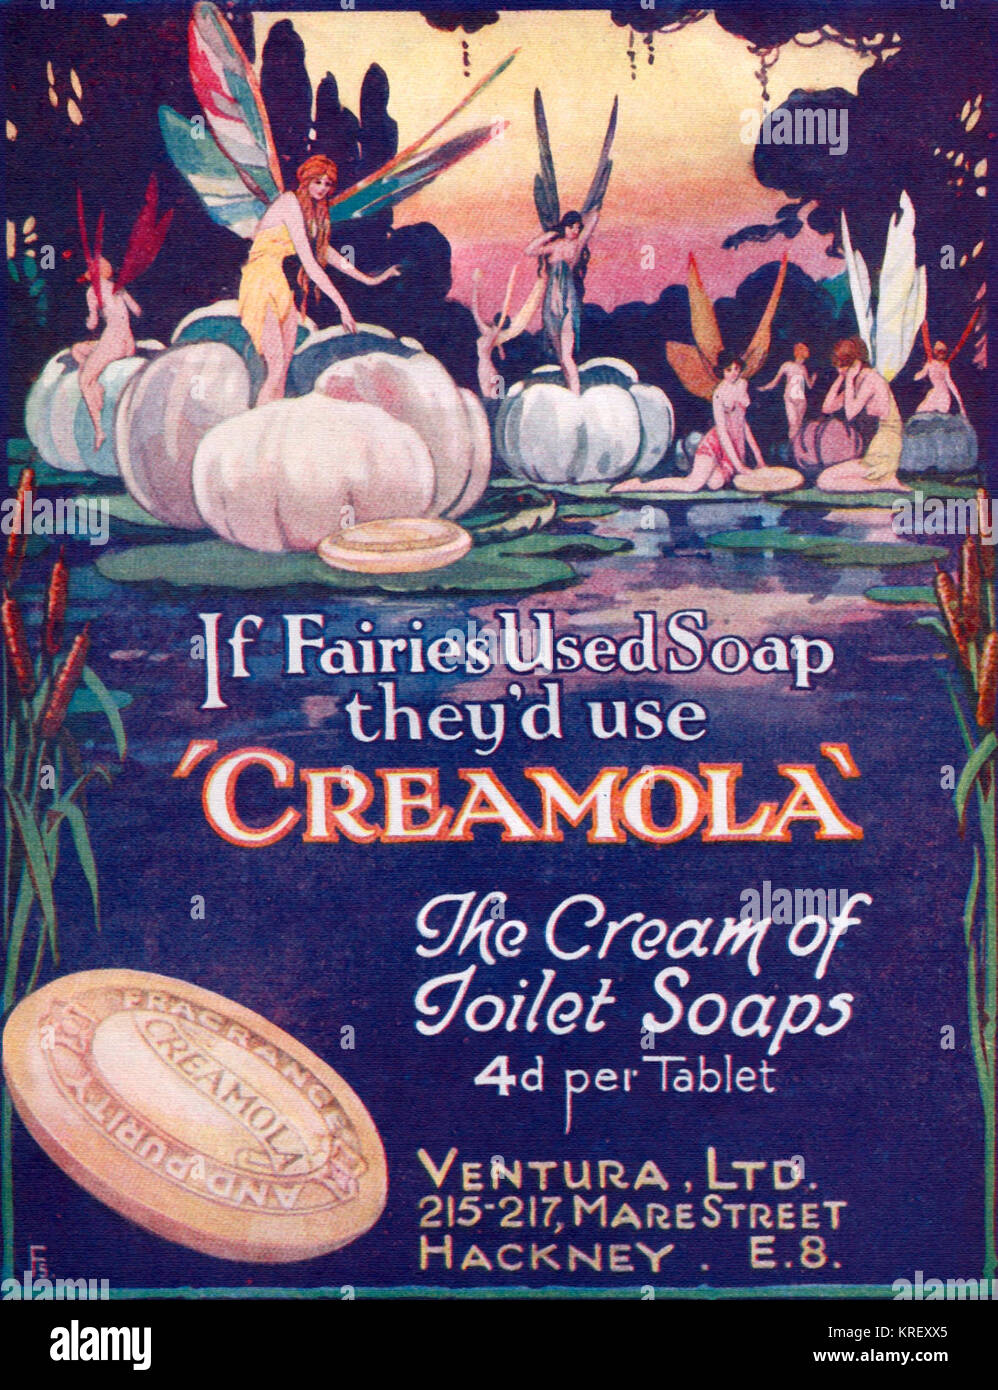 Cremola Toilet Soap advert, 1924 Stock Photo